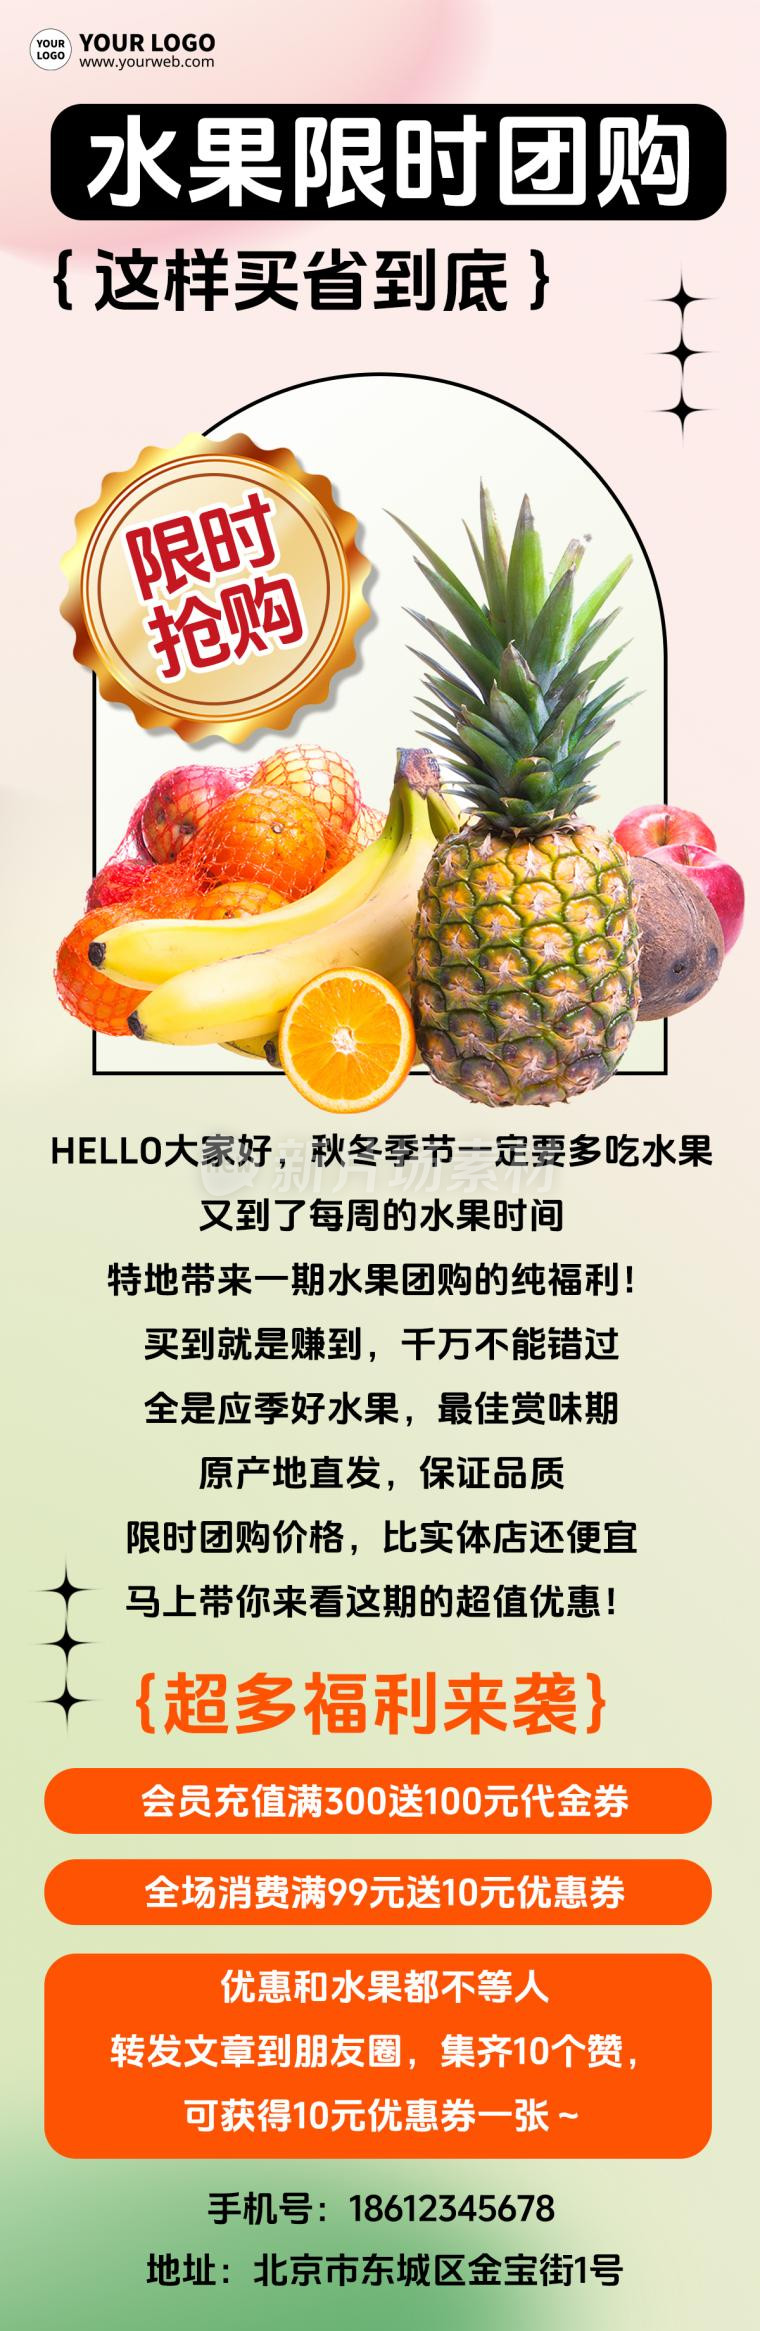 水果团购宣传促销手机长图海报